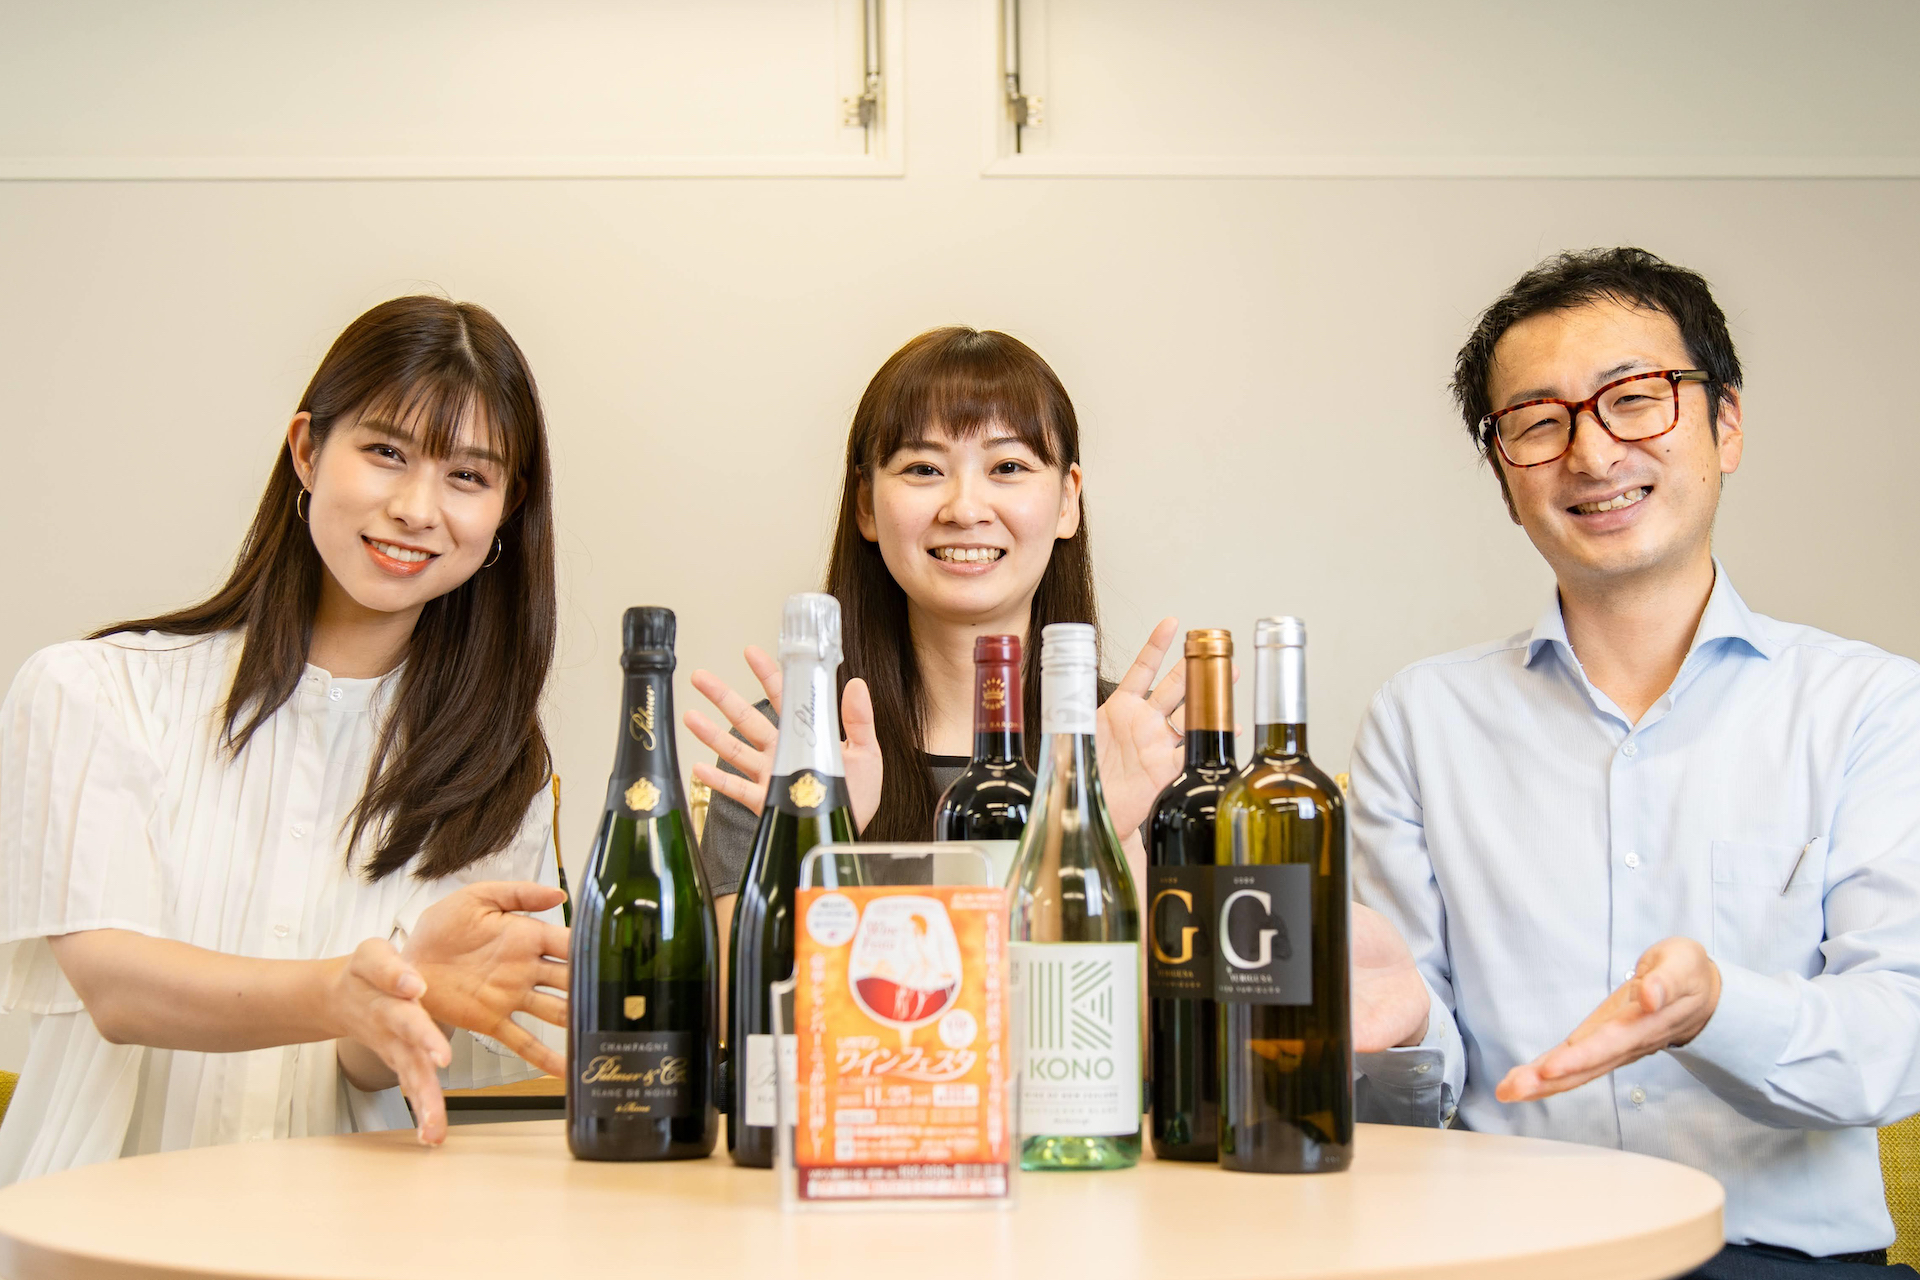 左から高樹リサ、松本千穂ワイン担当課長、荒木俊紀 執行役員